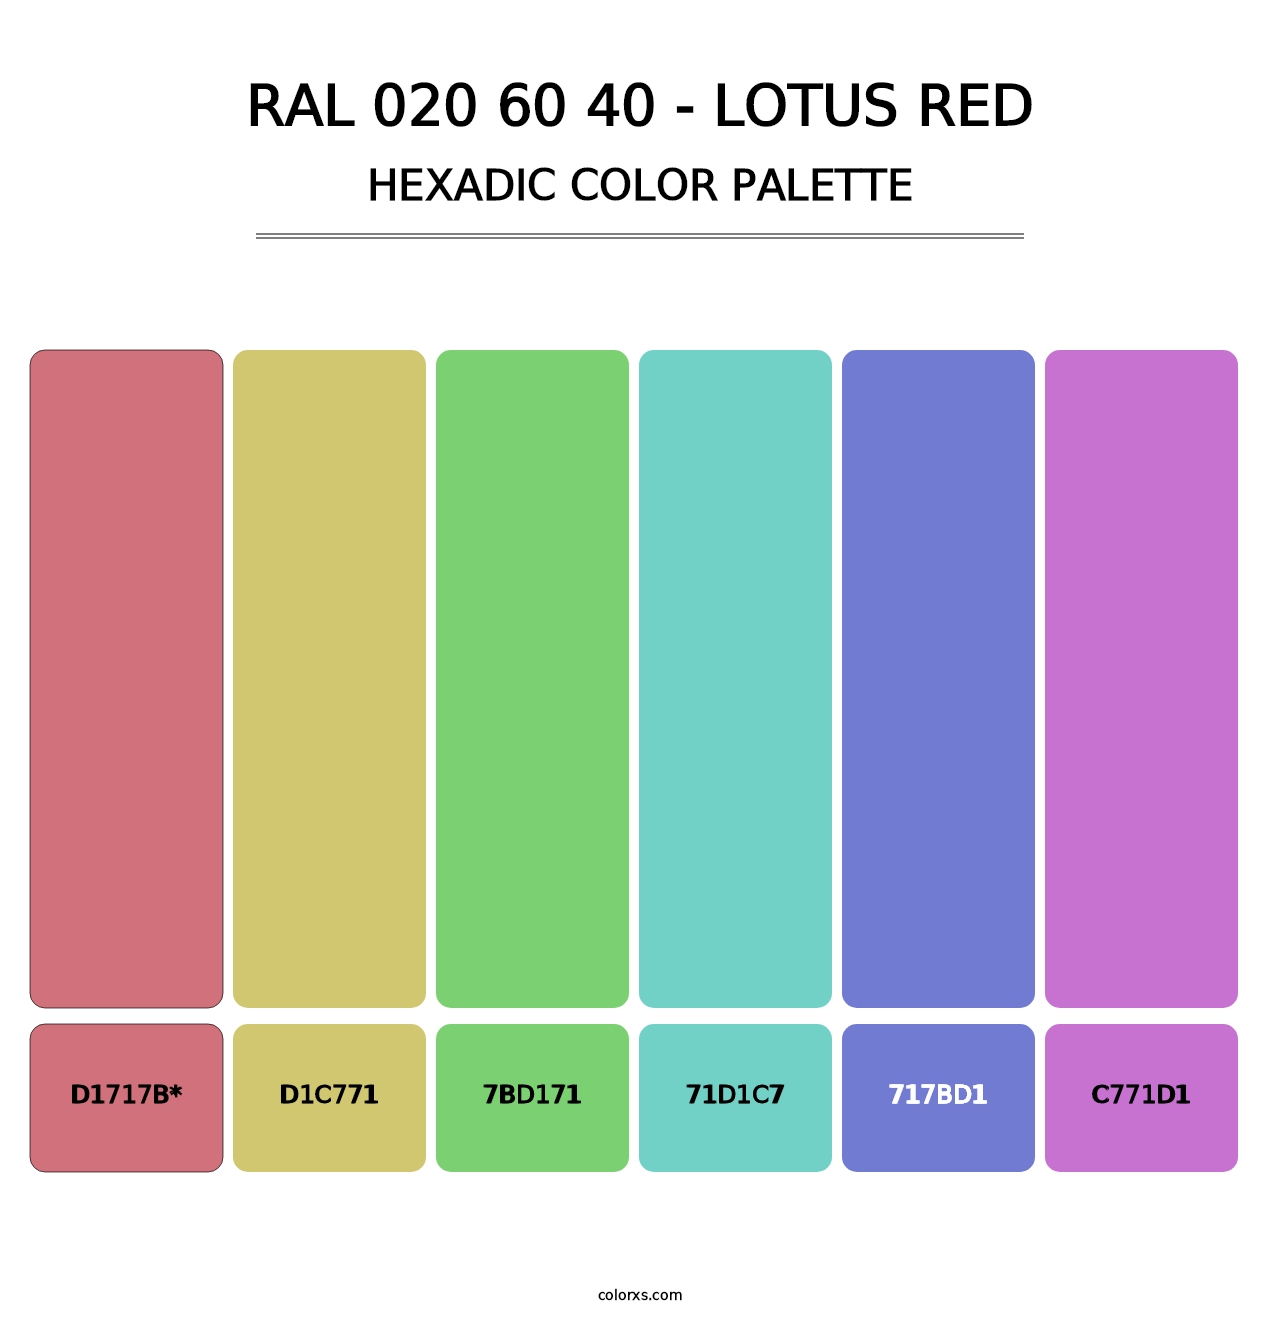 RAL 020 60 40 - Lotus Red - Hexadic Color Palette